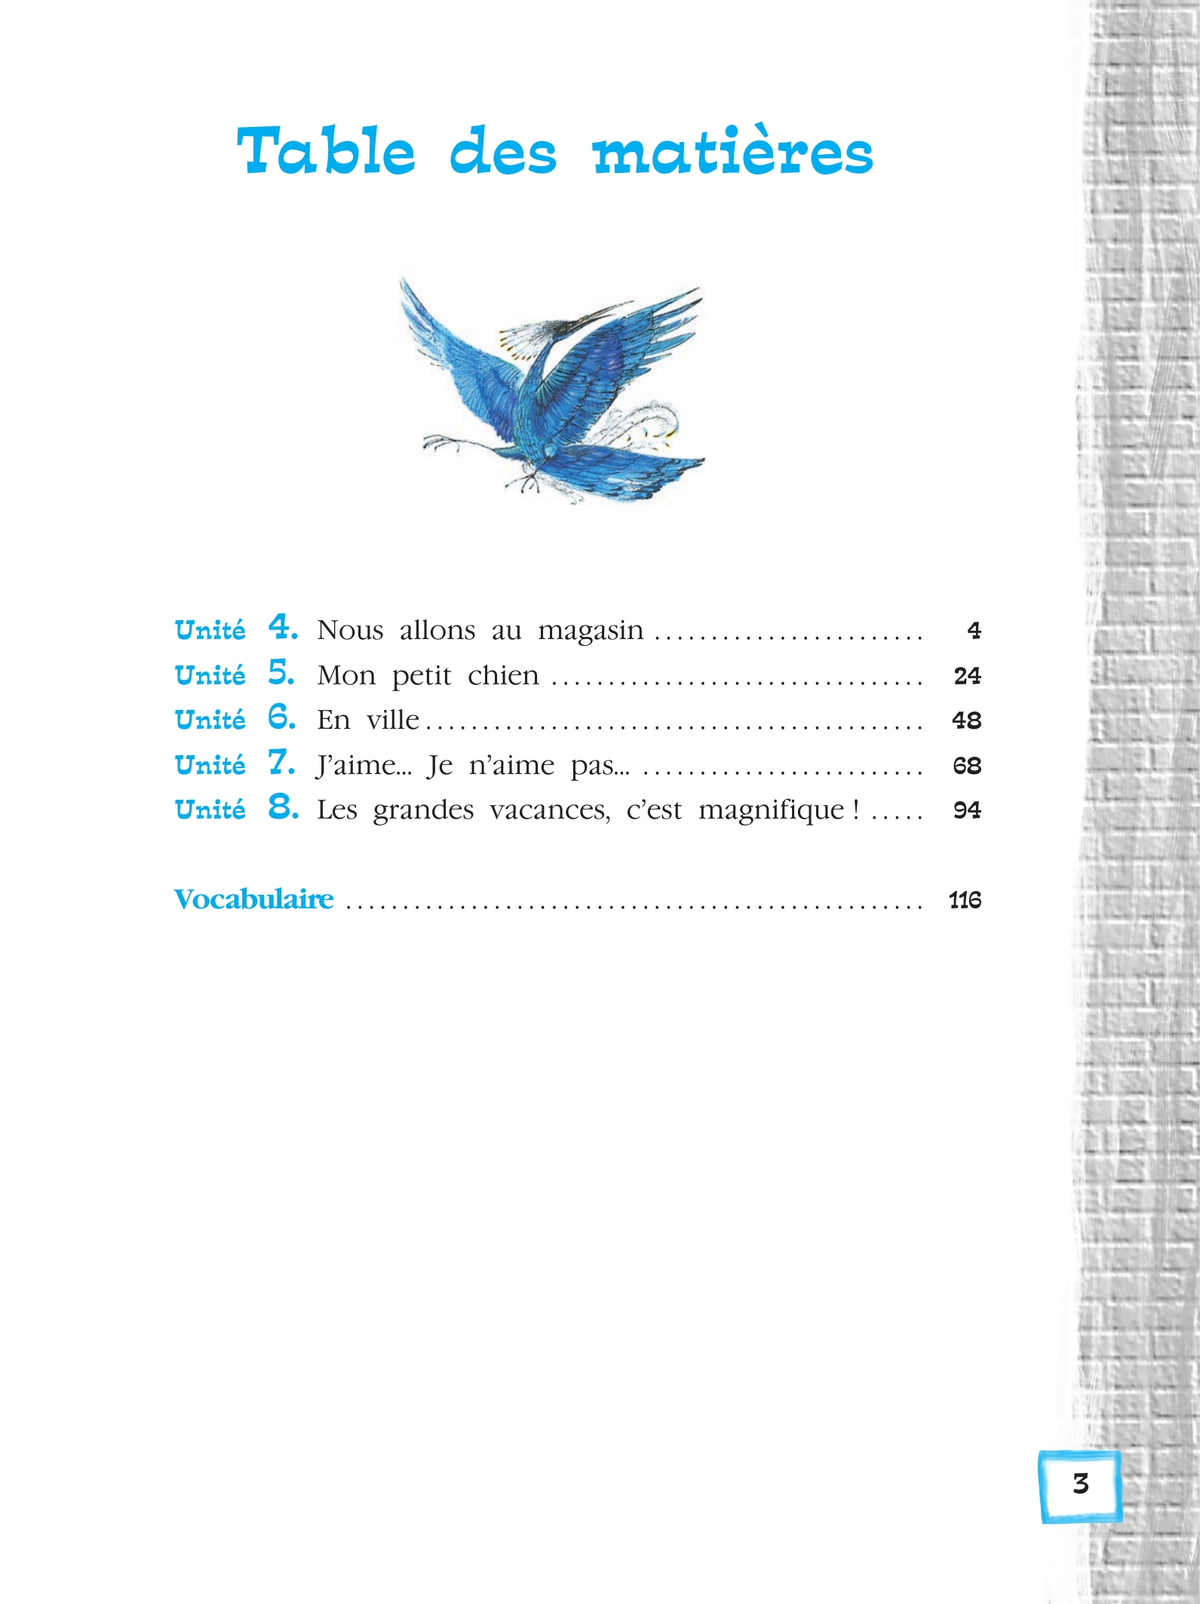 Французский язык. Второй иностранный язык. 5 класс. Учебник. В 2 ч. Часть 2 4